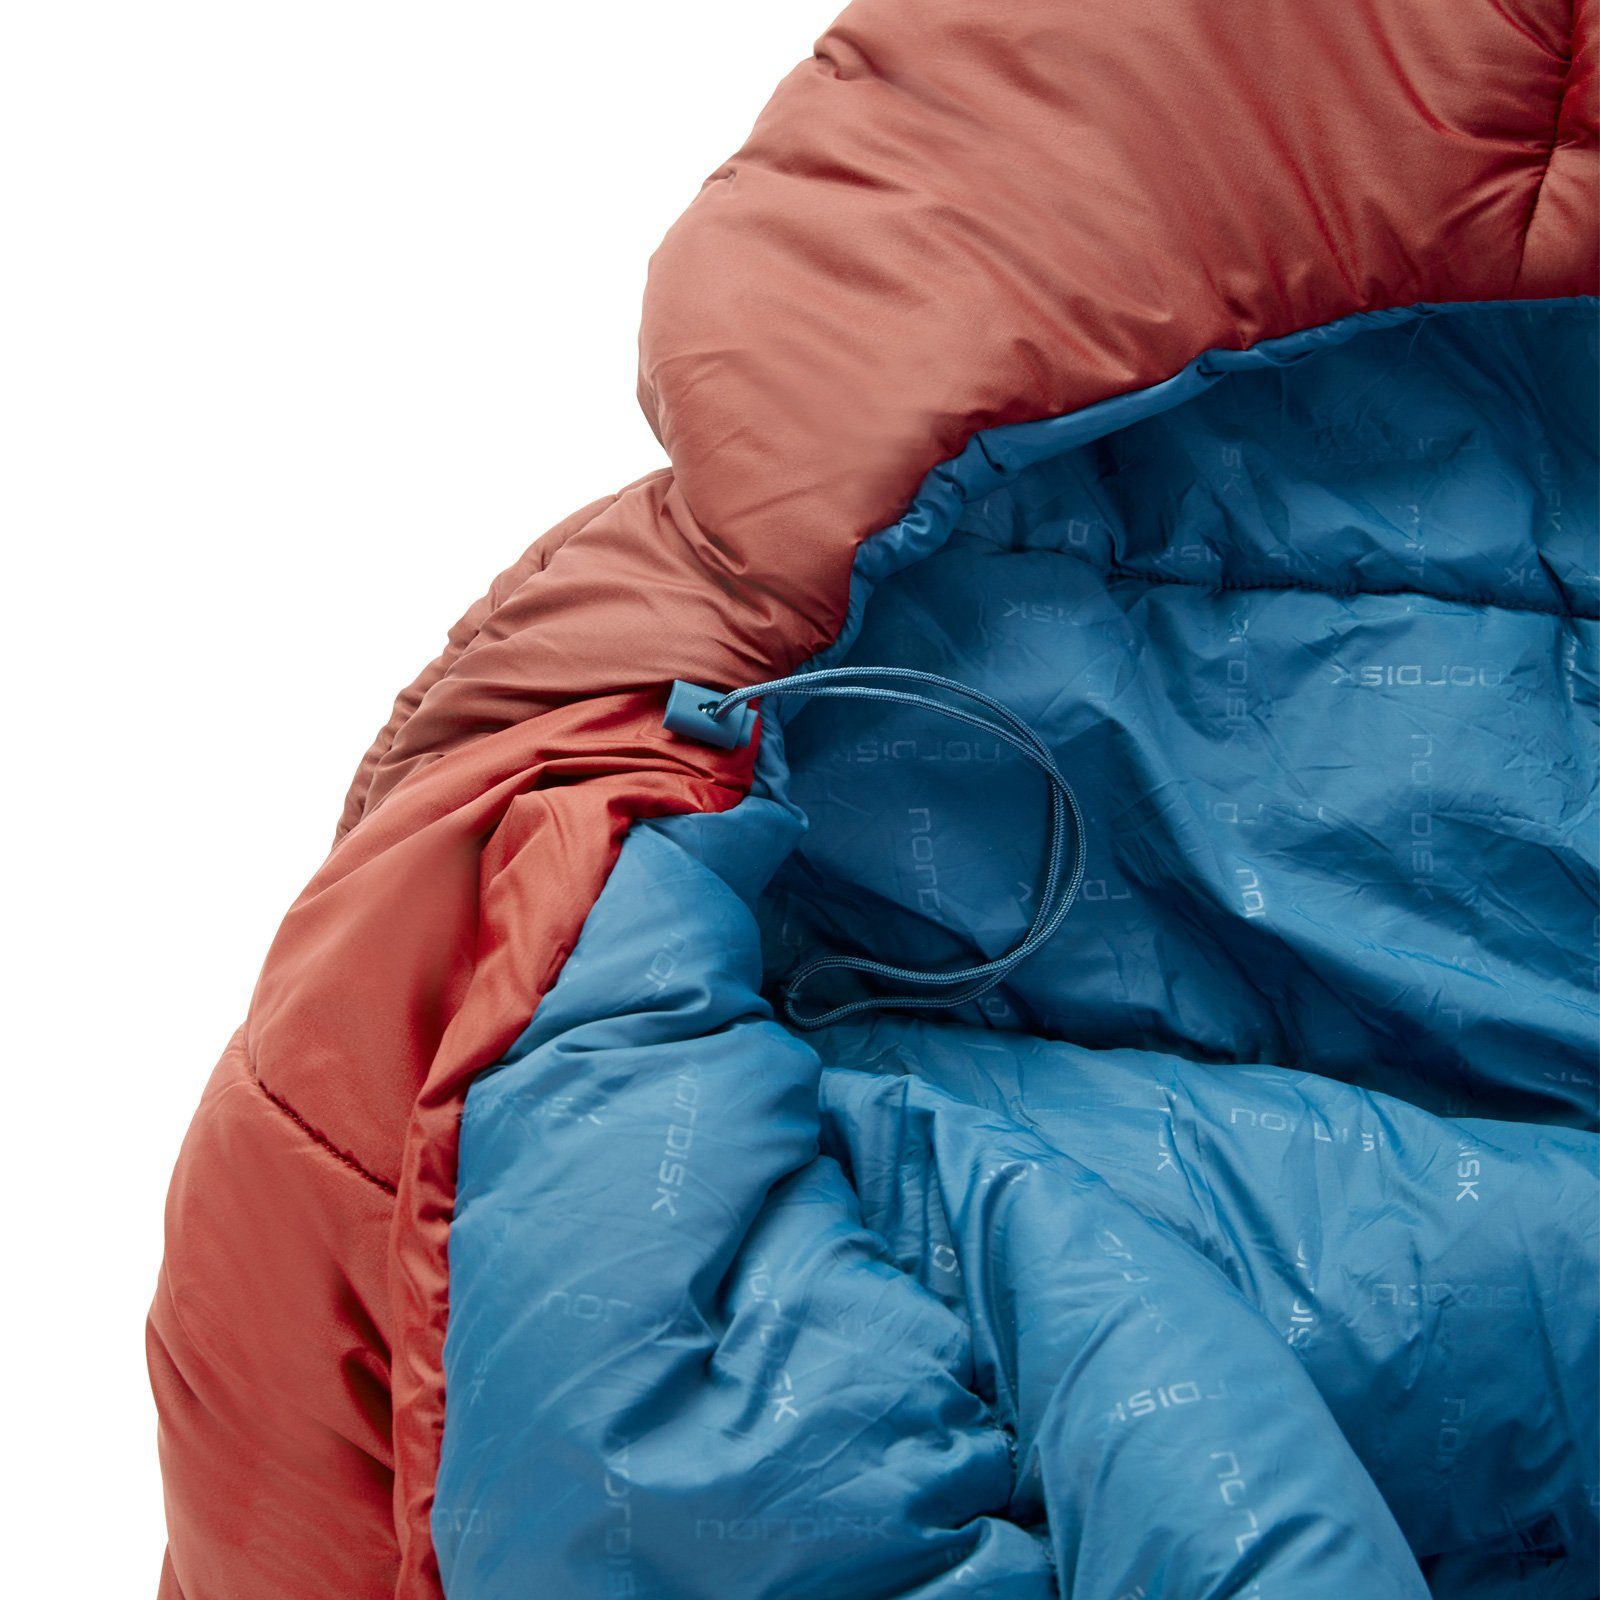 Deckenschlafsack Jahreszeiten Puk -2° Lang 3 -20°C Deckenschlafsack Outdoor, XL Nordisk Schlafsack